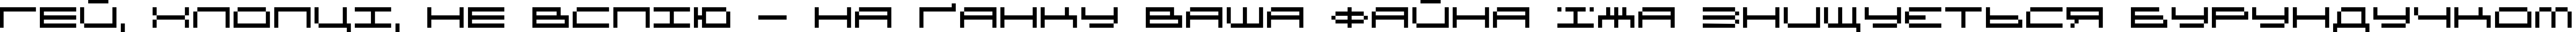 Пример написания шрифтом DS OlymPix текста на украинском